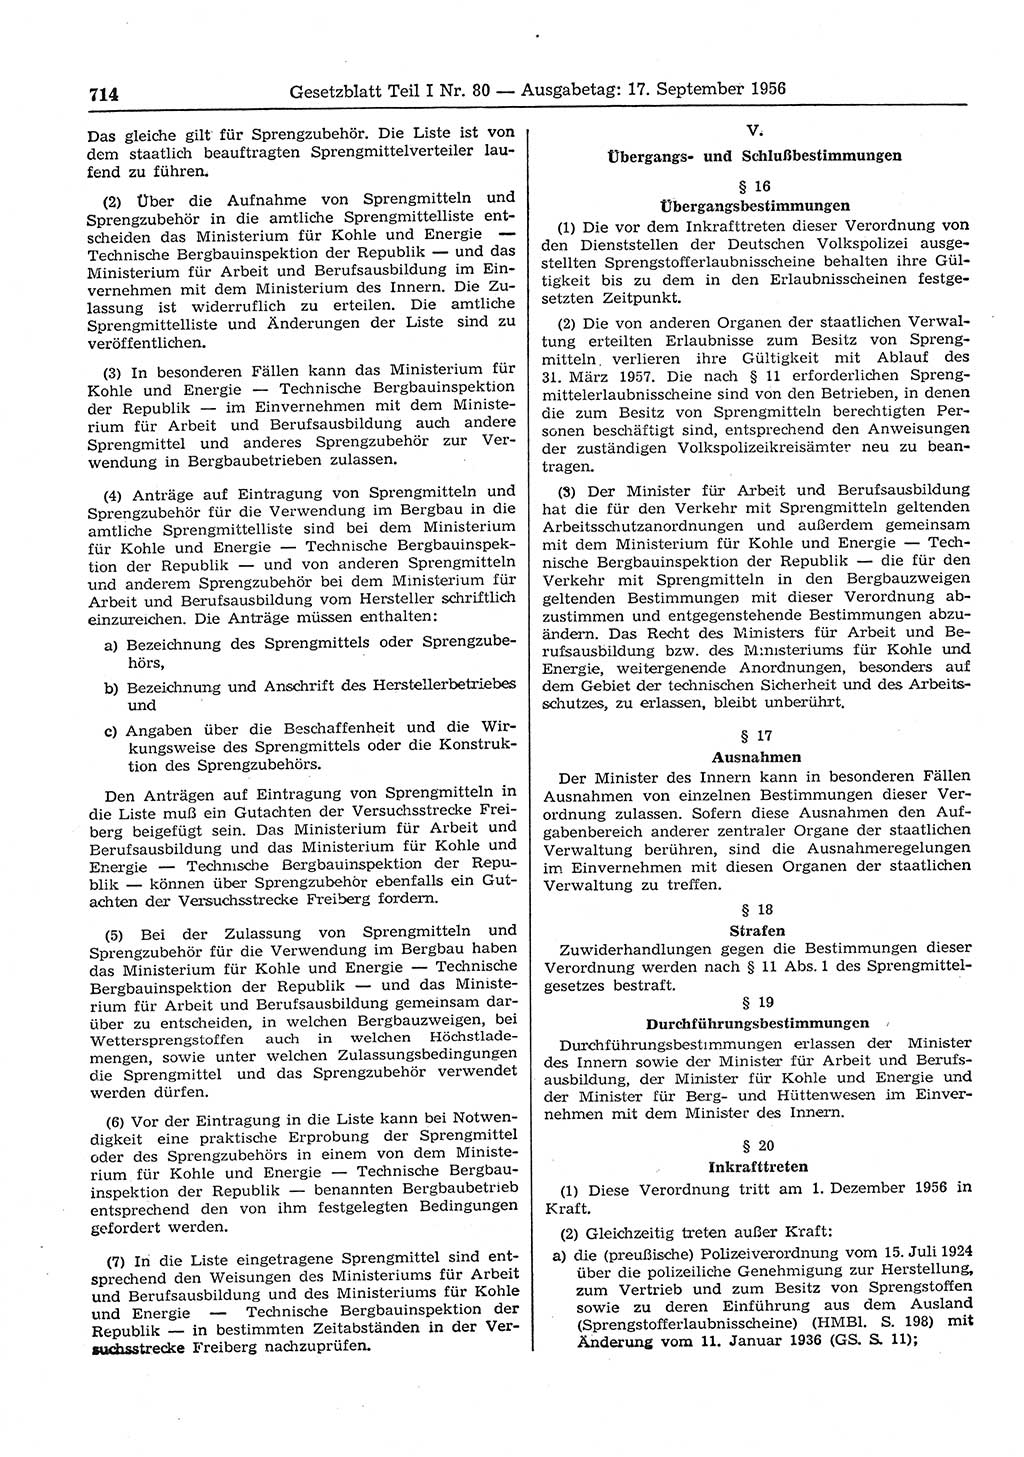 Gesetzblatt (GBl.) der Deutschen Demokratischen Republik (DDR) Teil Ⅰ 1956, Seite 714 (GBl. DDR Ⅰ 1956, S. 714)